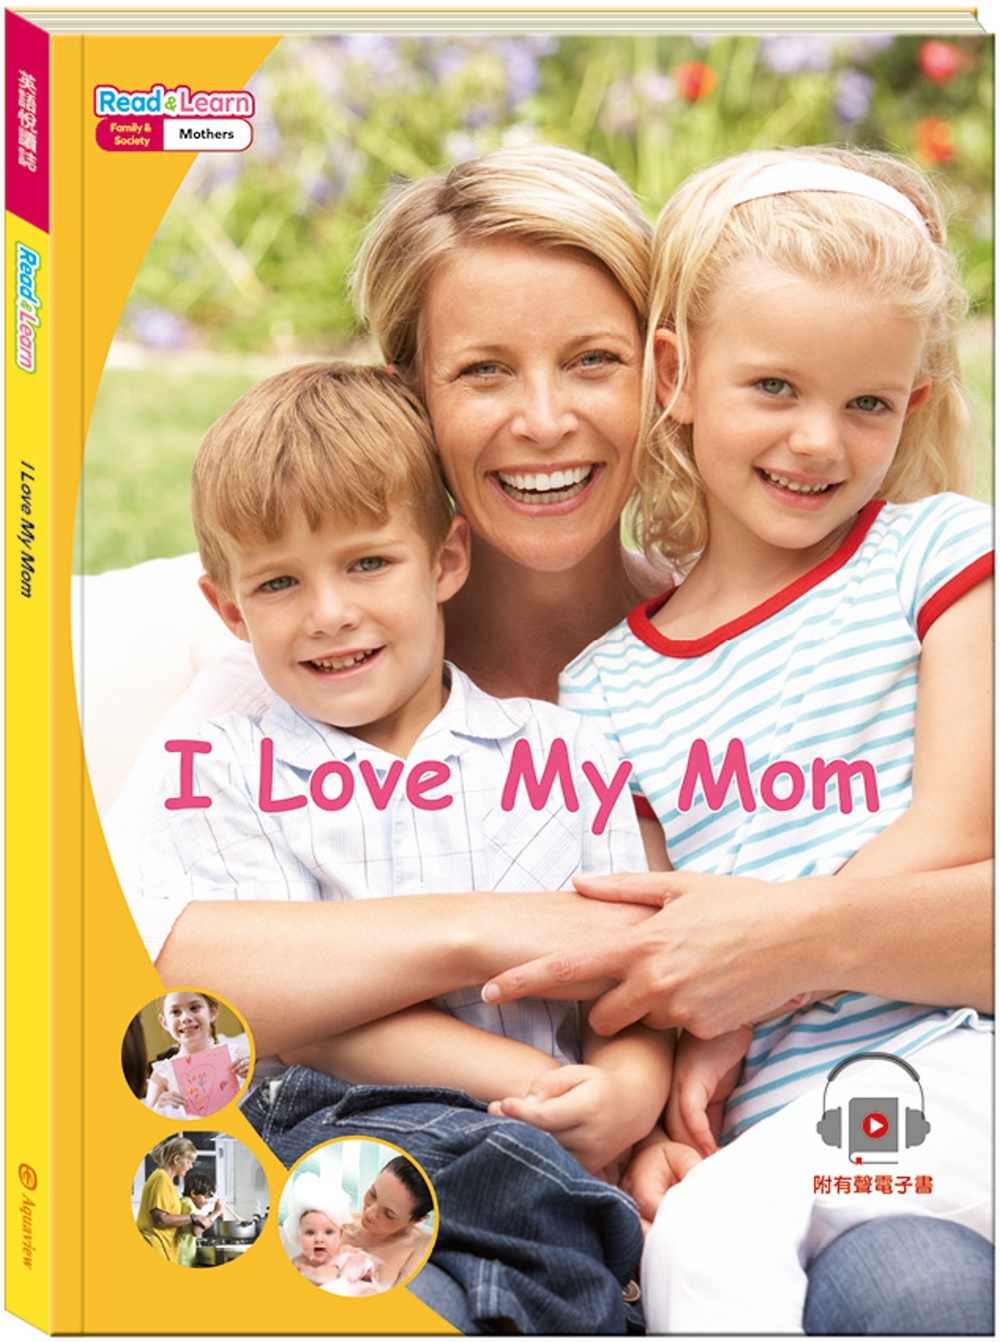 英語悅讀誌系列Read & Learn - I Love My Mom